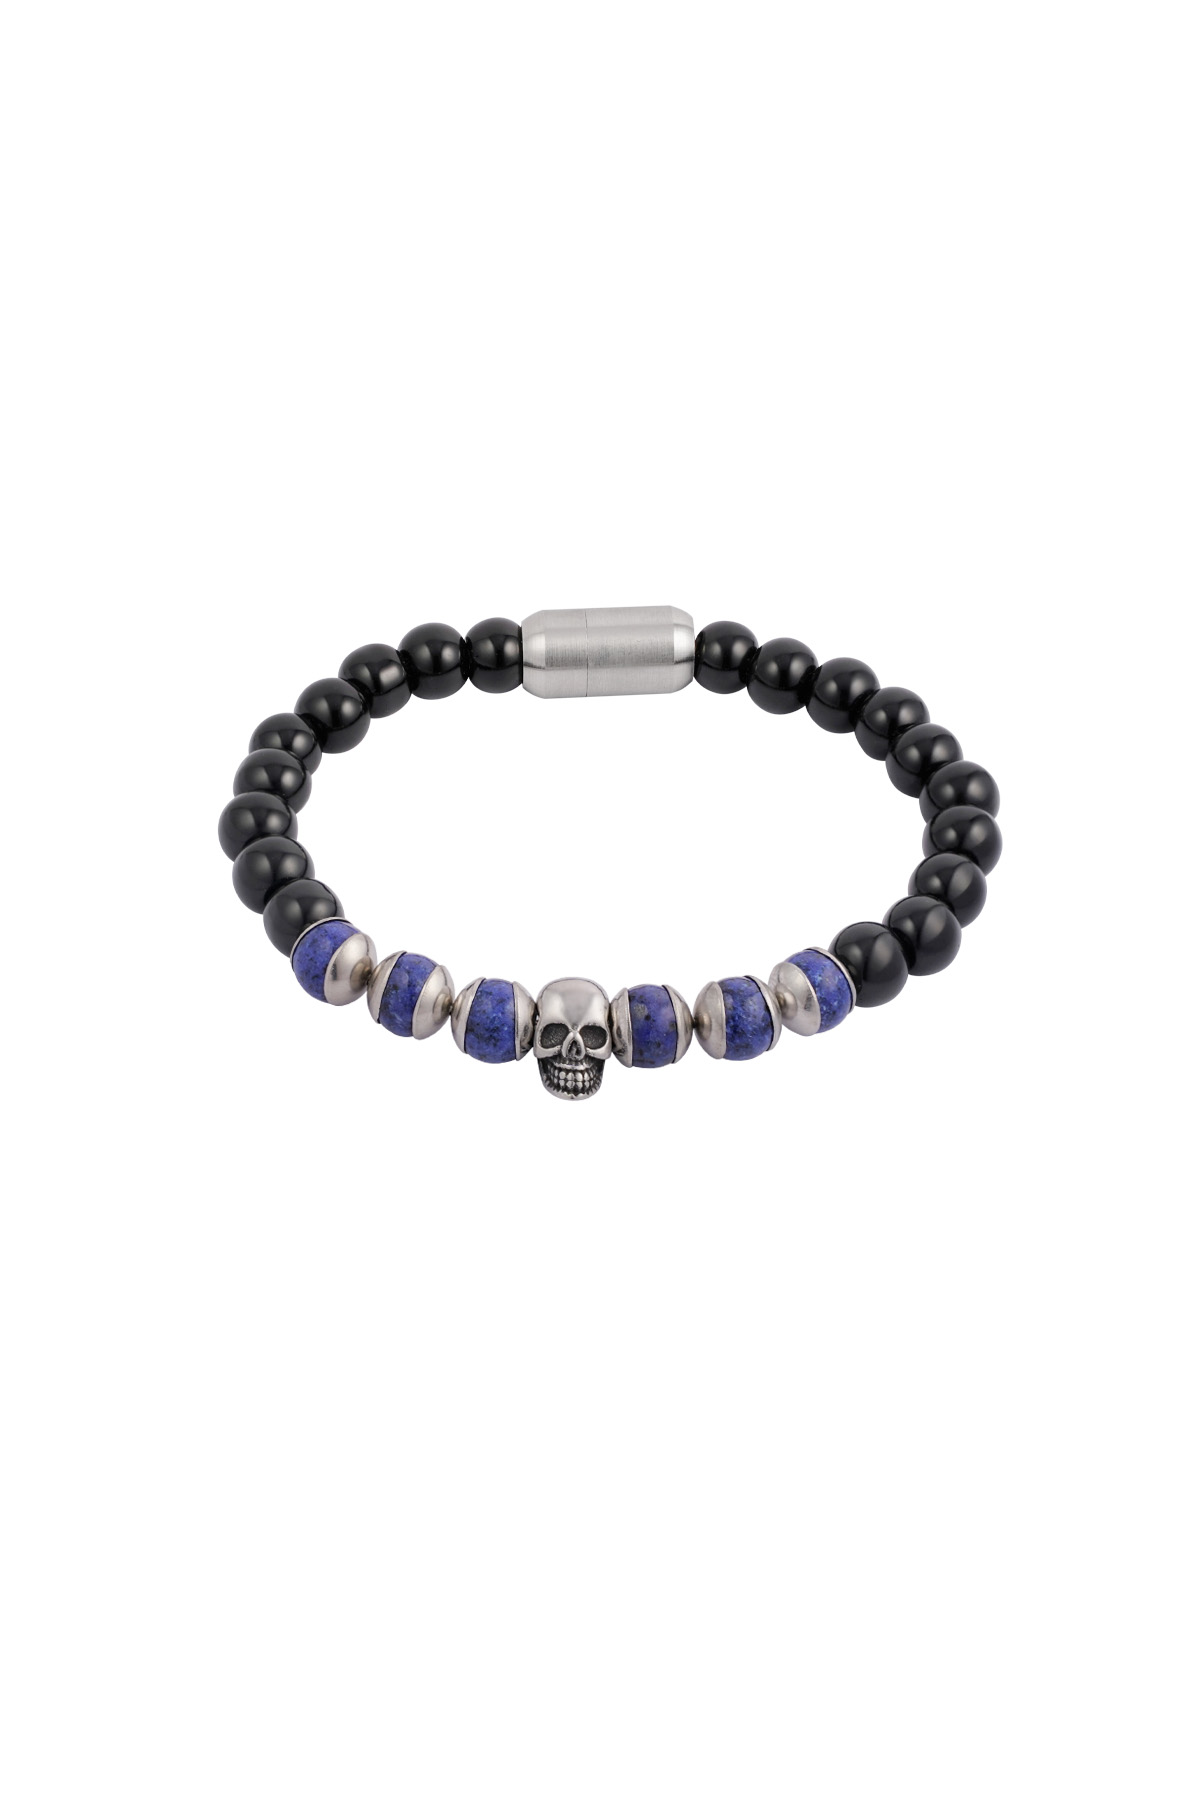 Armband mit Perlen und Totenkopf - schwarz/blau 